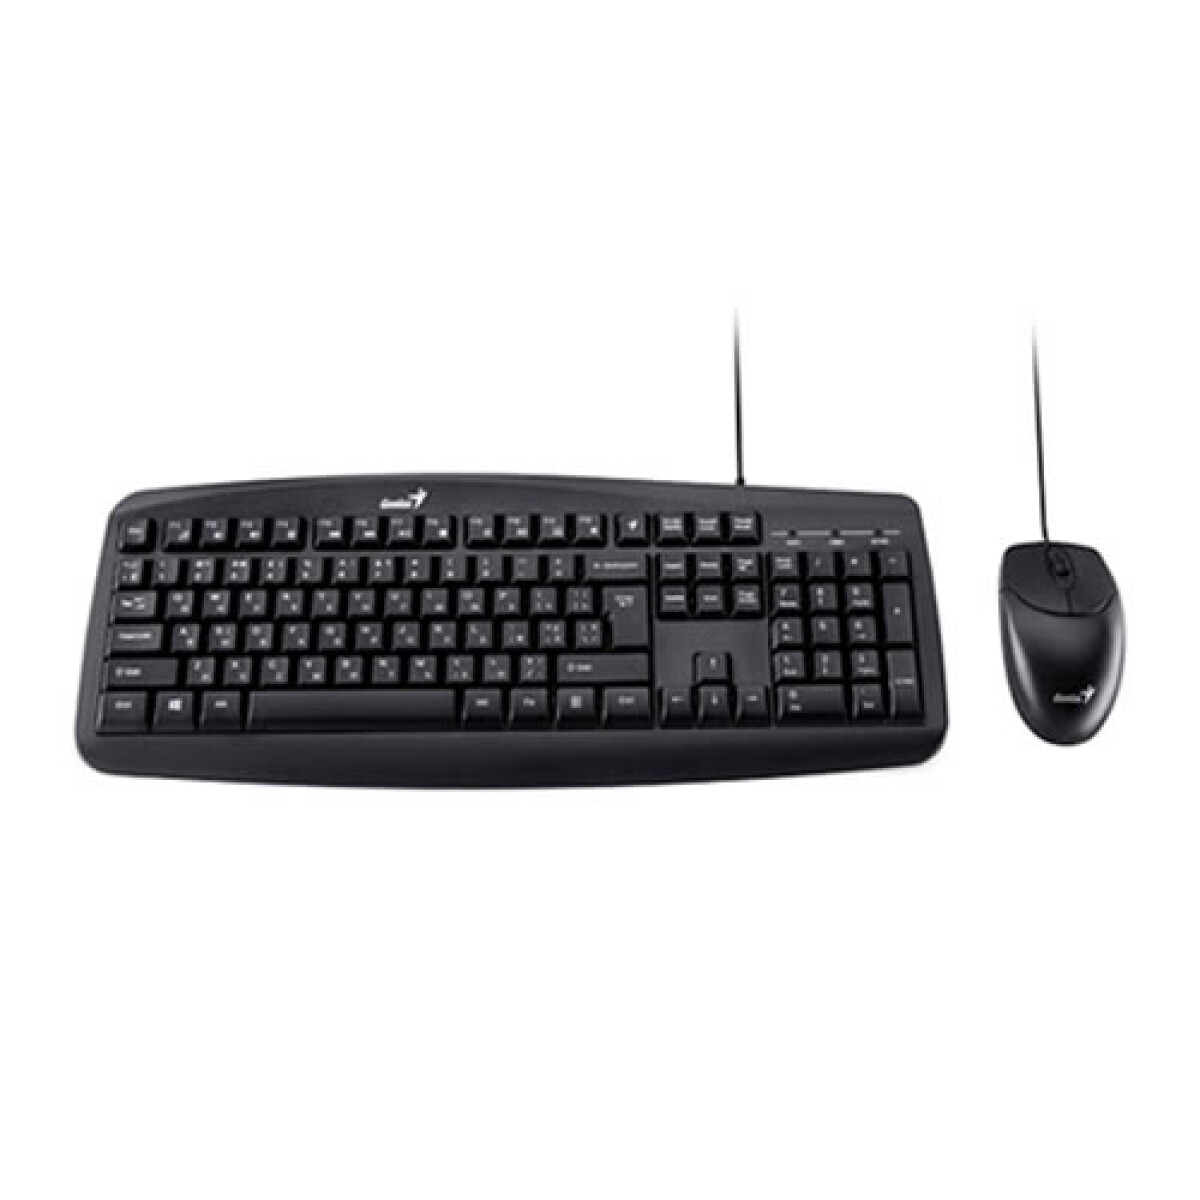 Mouse y teclado GENIUS KM-200 